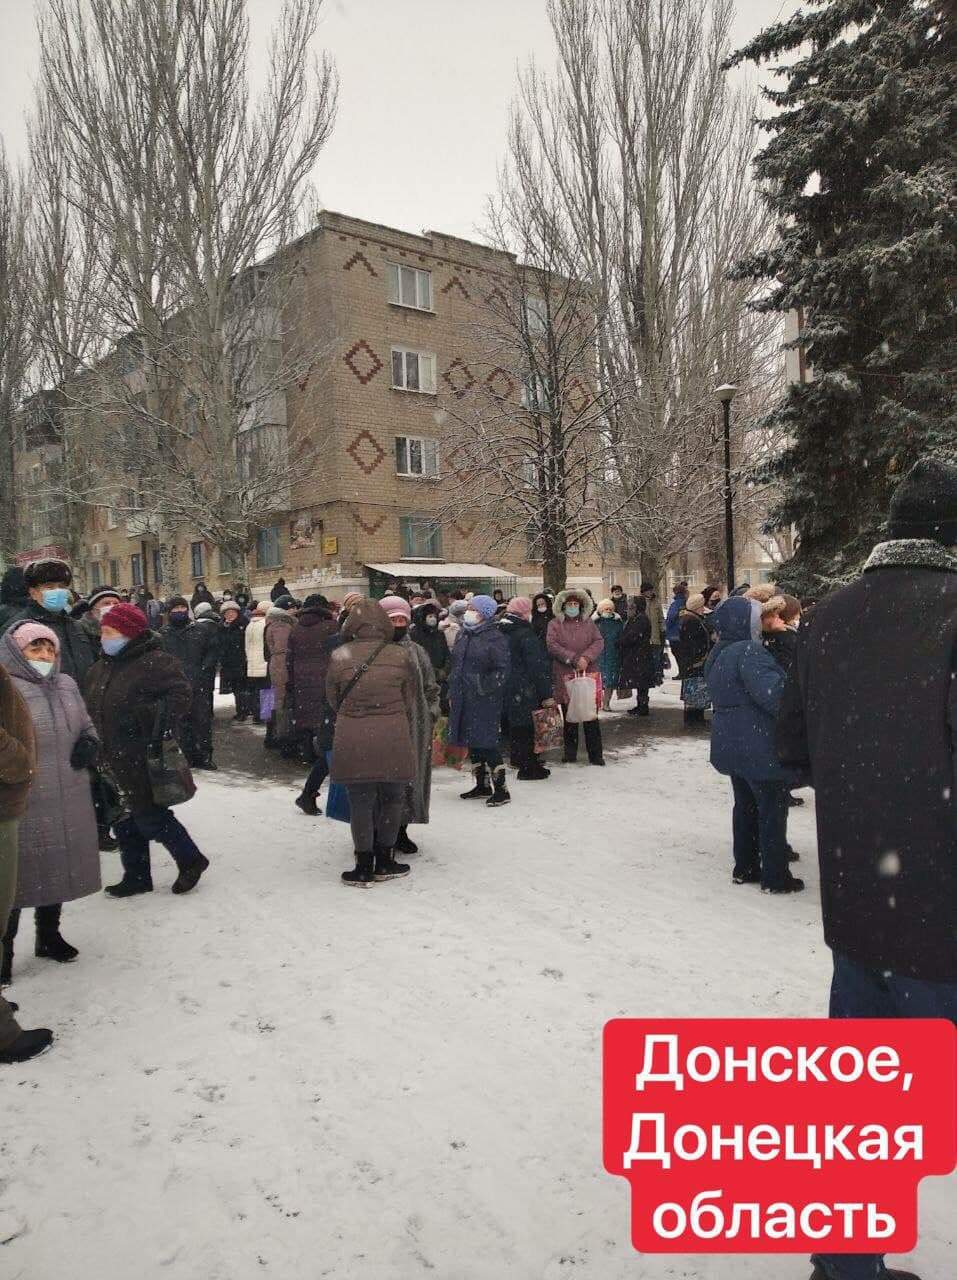 По всей Украине прошли массовые тарифные протесты (ФОТО)